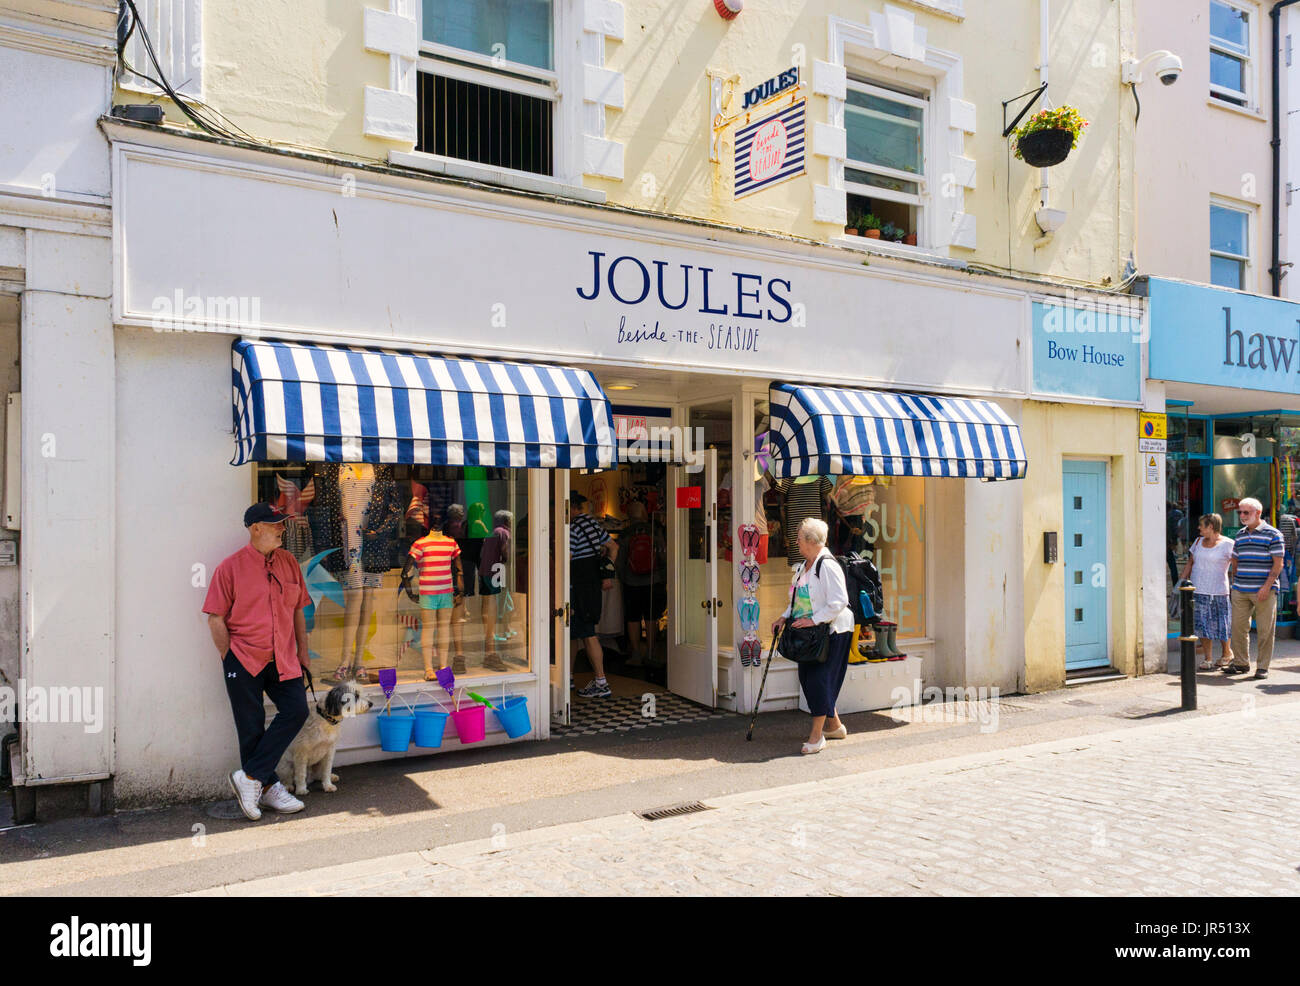 Joules clothing store, England, UK Stock Photo